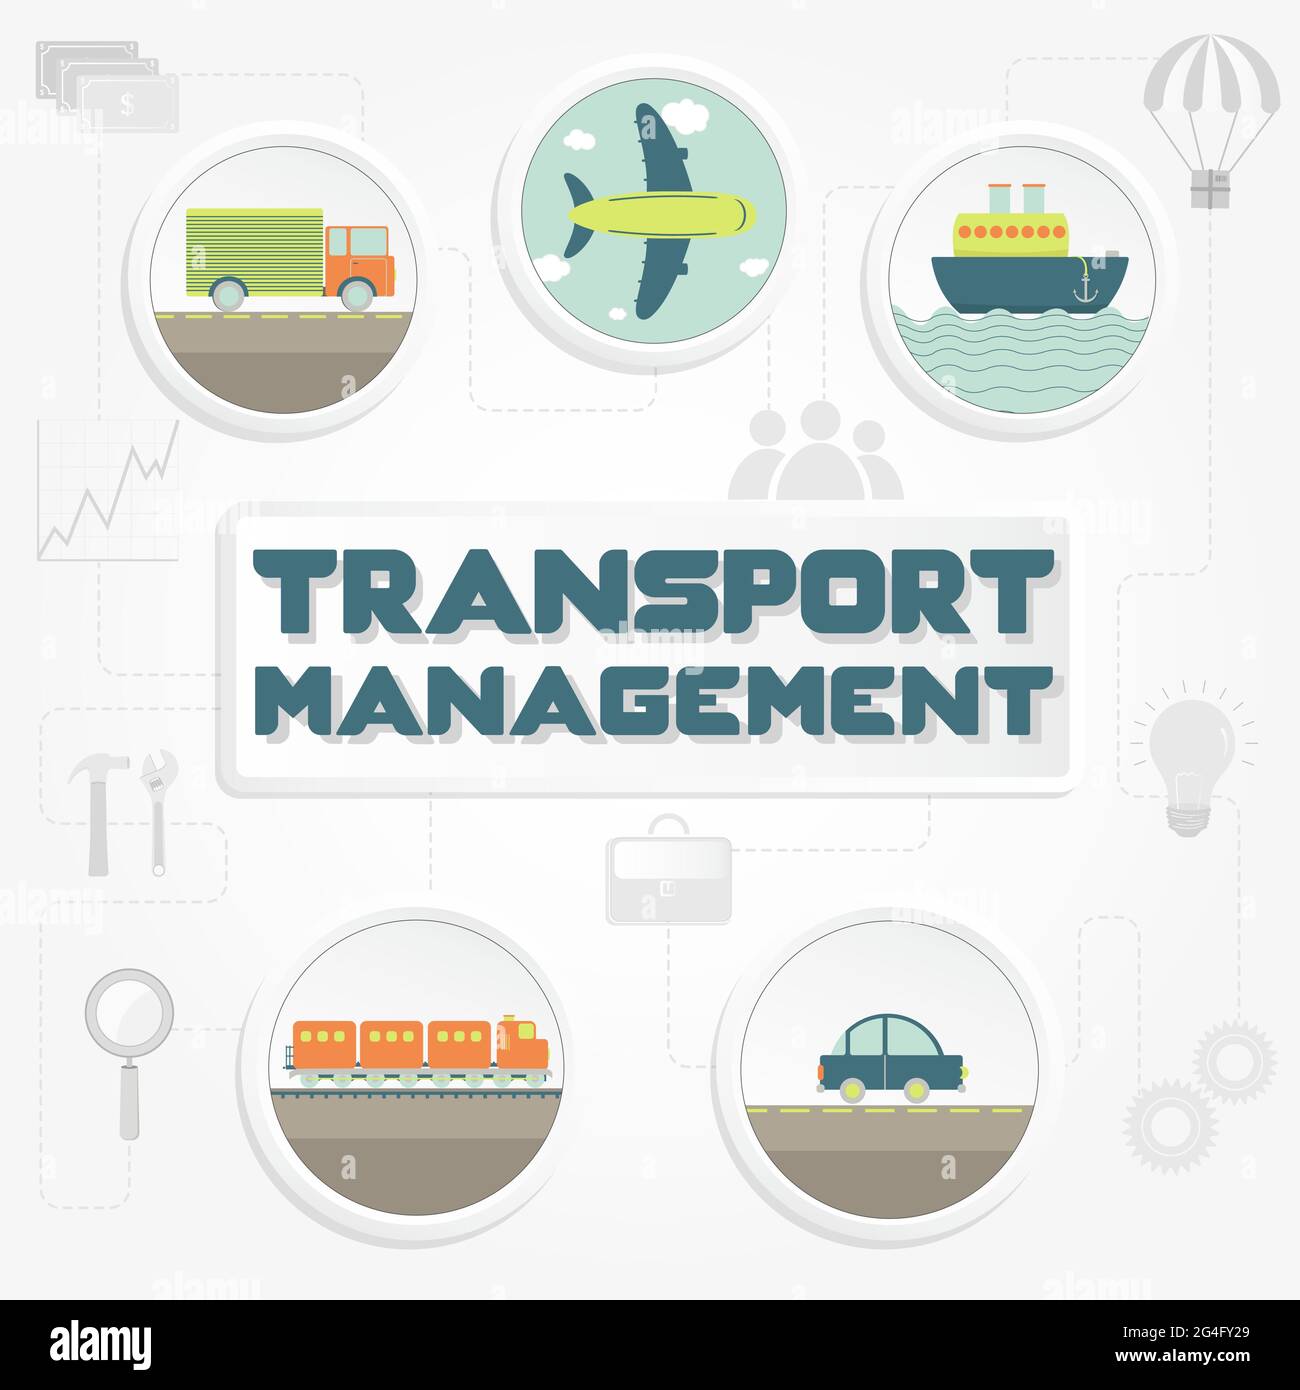 Frase de 'gestión de transporte', transporte (camión, coche, barco, avión y tren) y herramientas Ilustración del Vector